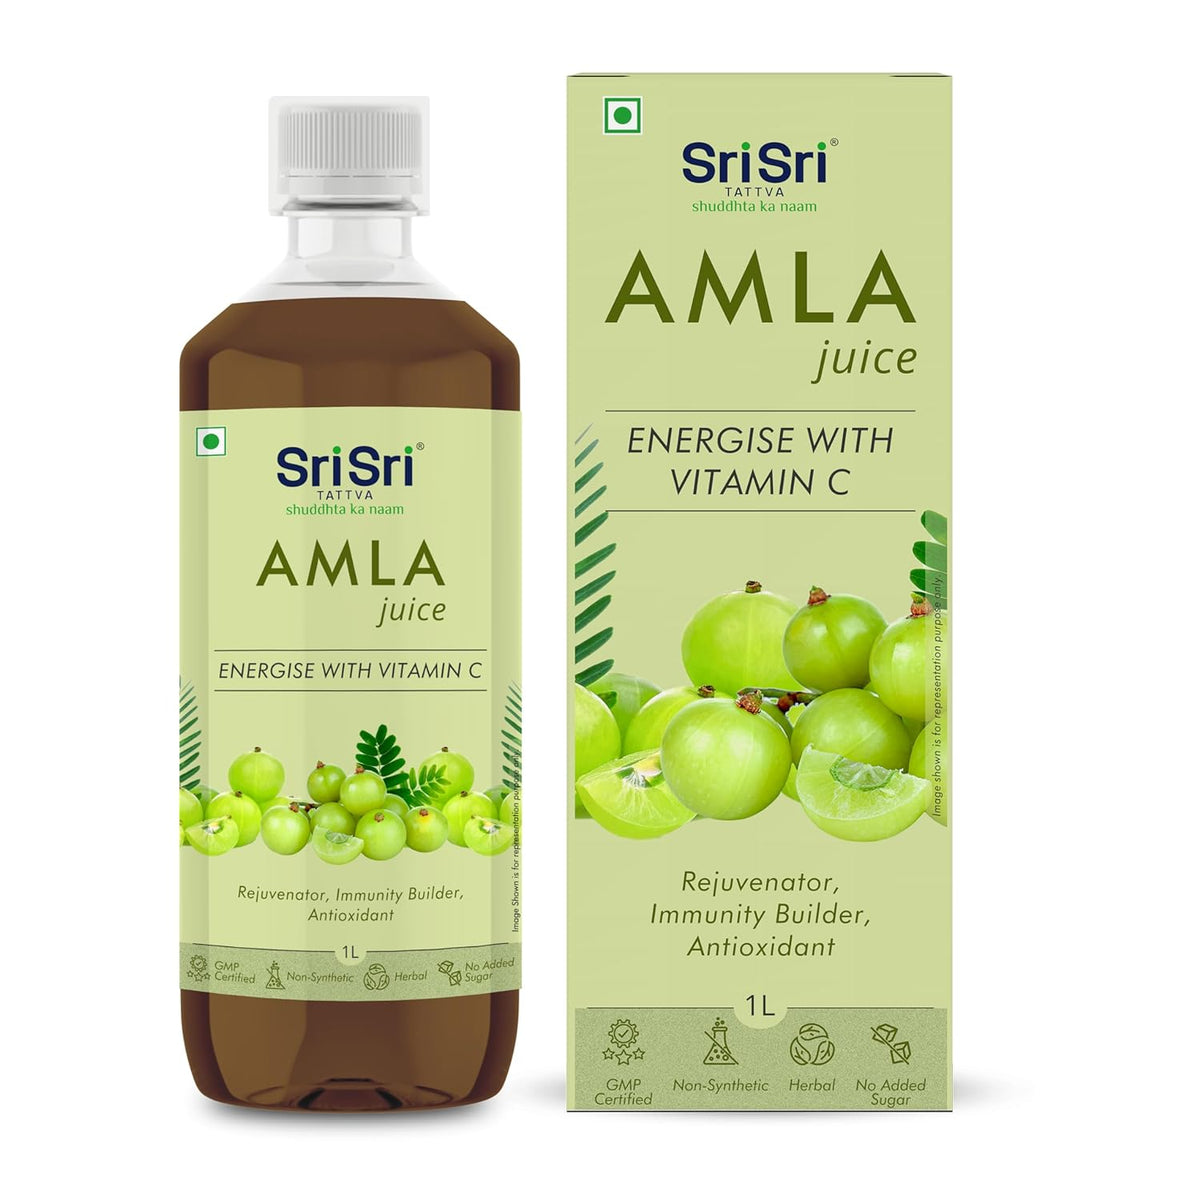 Sri Sri Tattva Ayurvedic Amla Juice 1 Litre